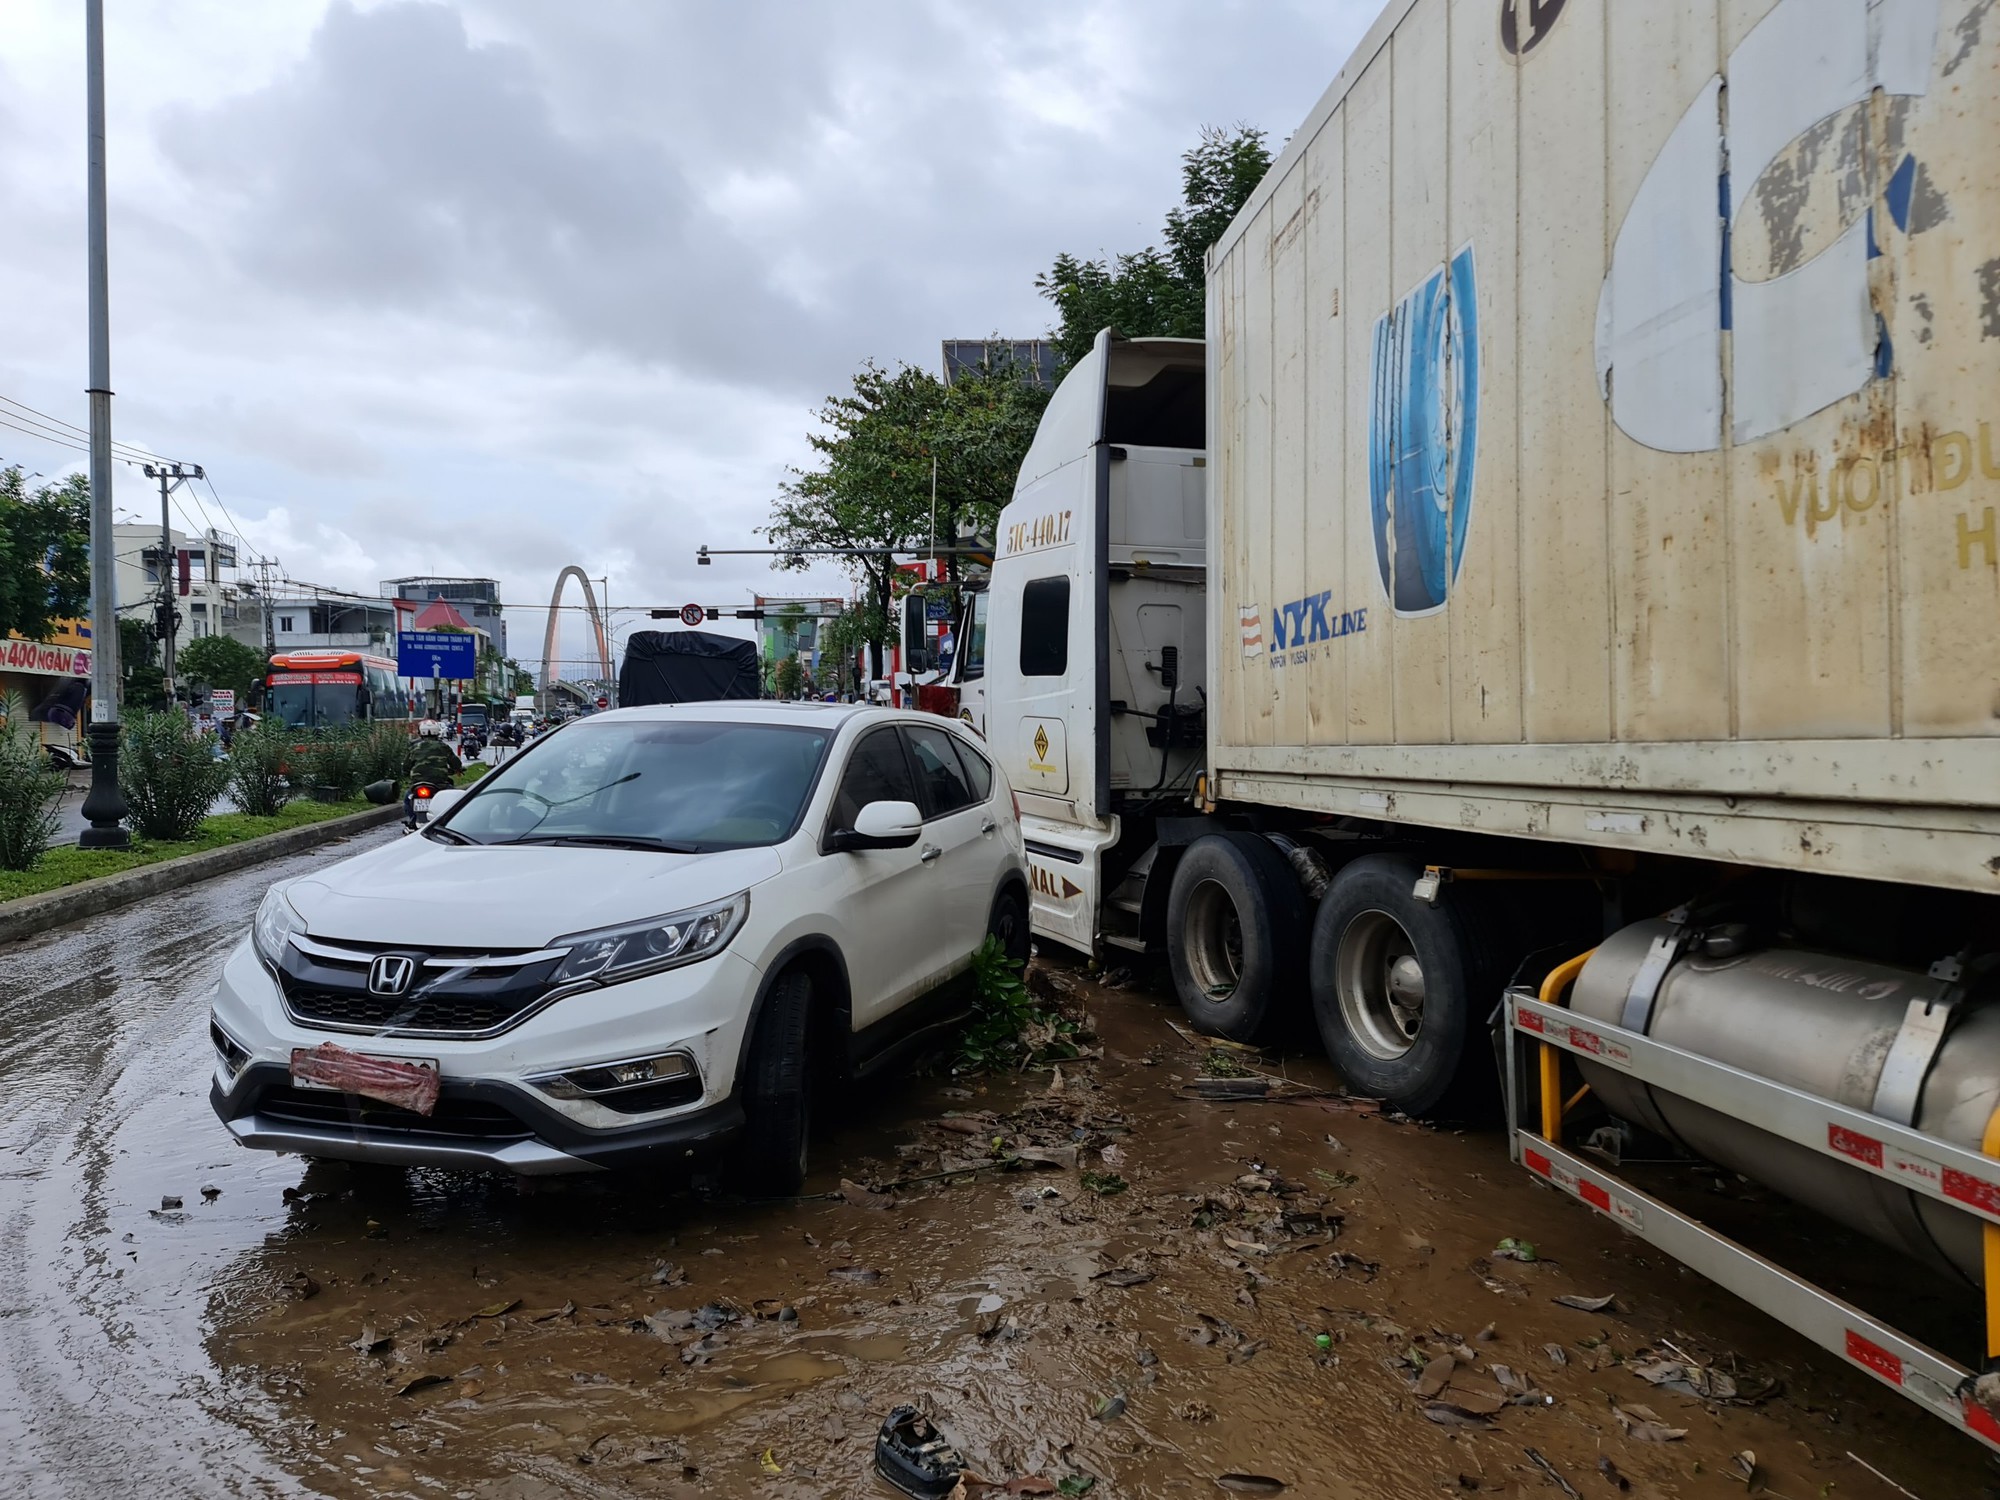 CLIP: Đà Nẵng sau trận mưa ngập lịch sử: Đường phố xơ xác, xe chết máy nằm la liệt... - Ảnh 2.